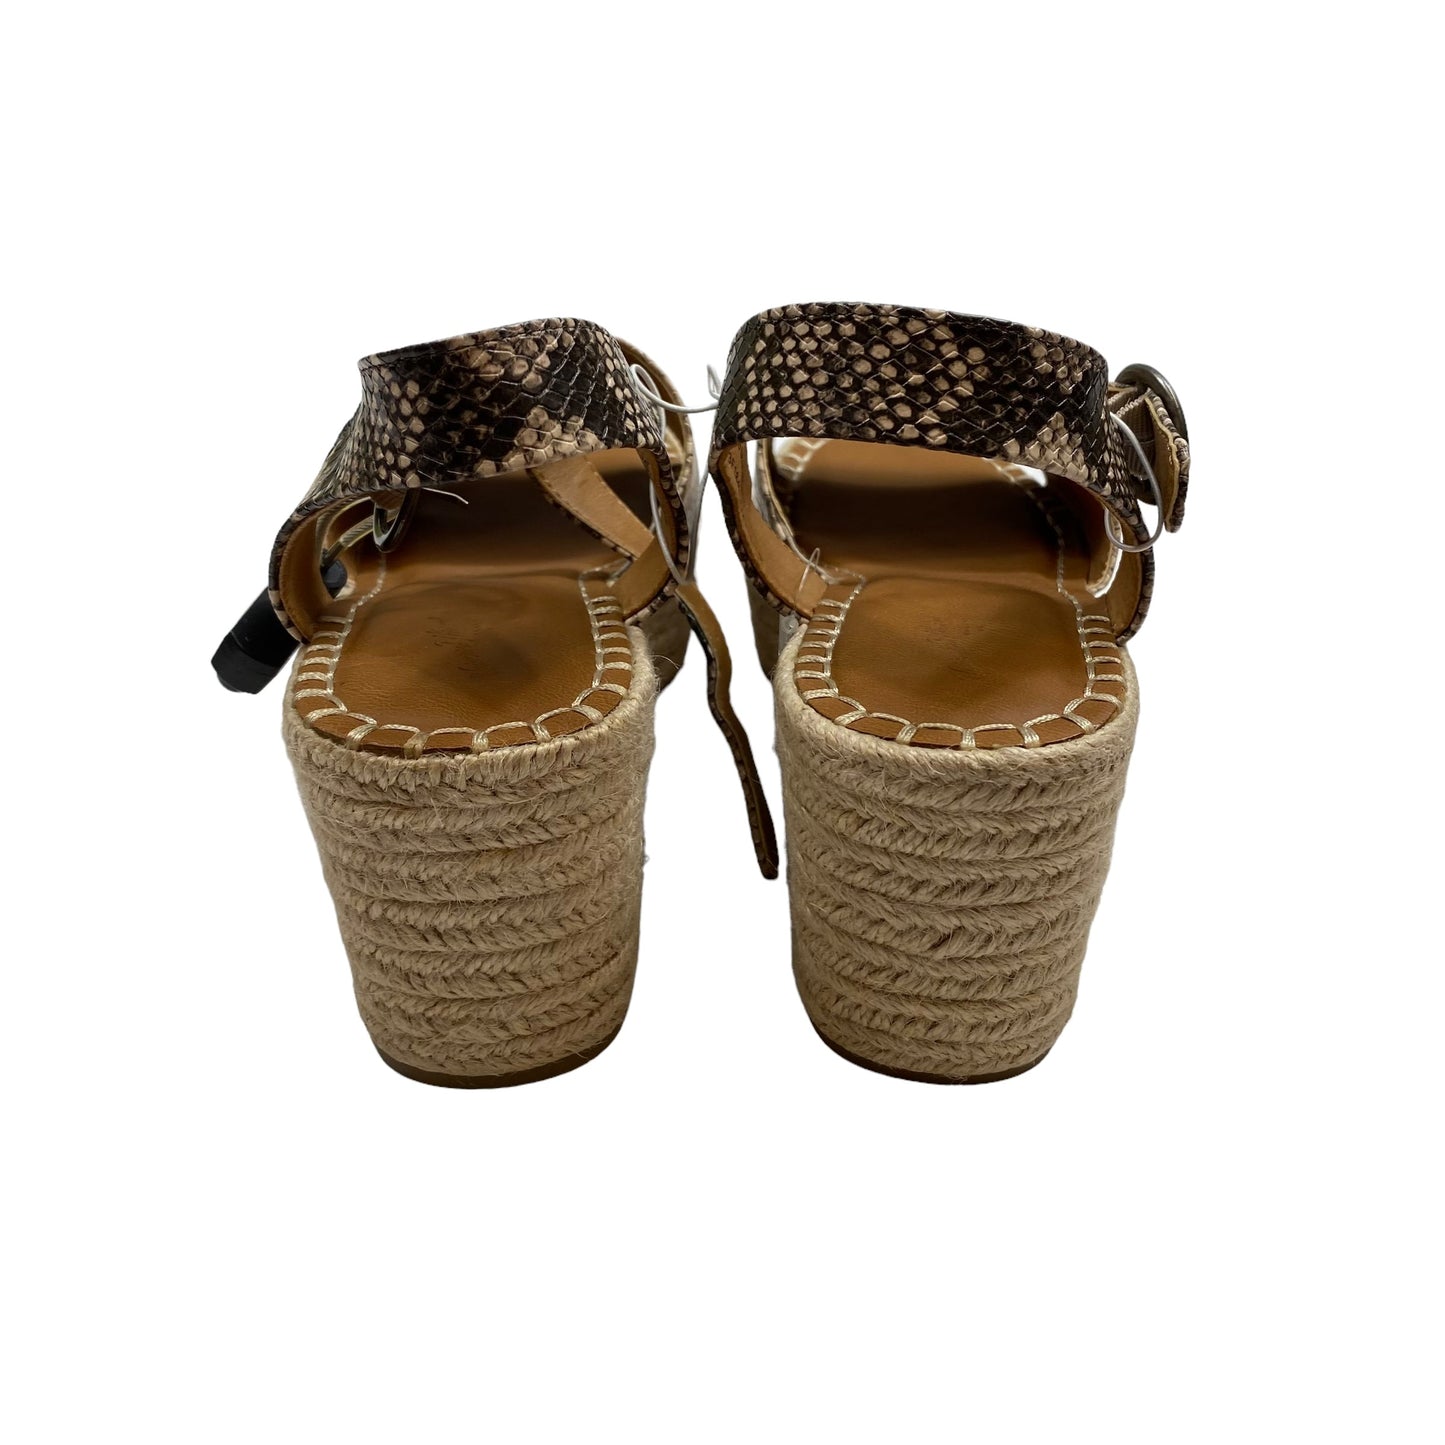 Sandals Heels Platform By Universal Thread  Size: 9.5